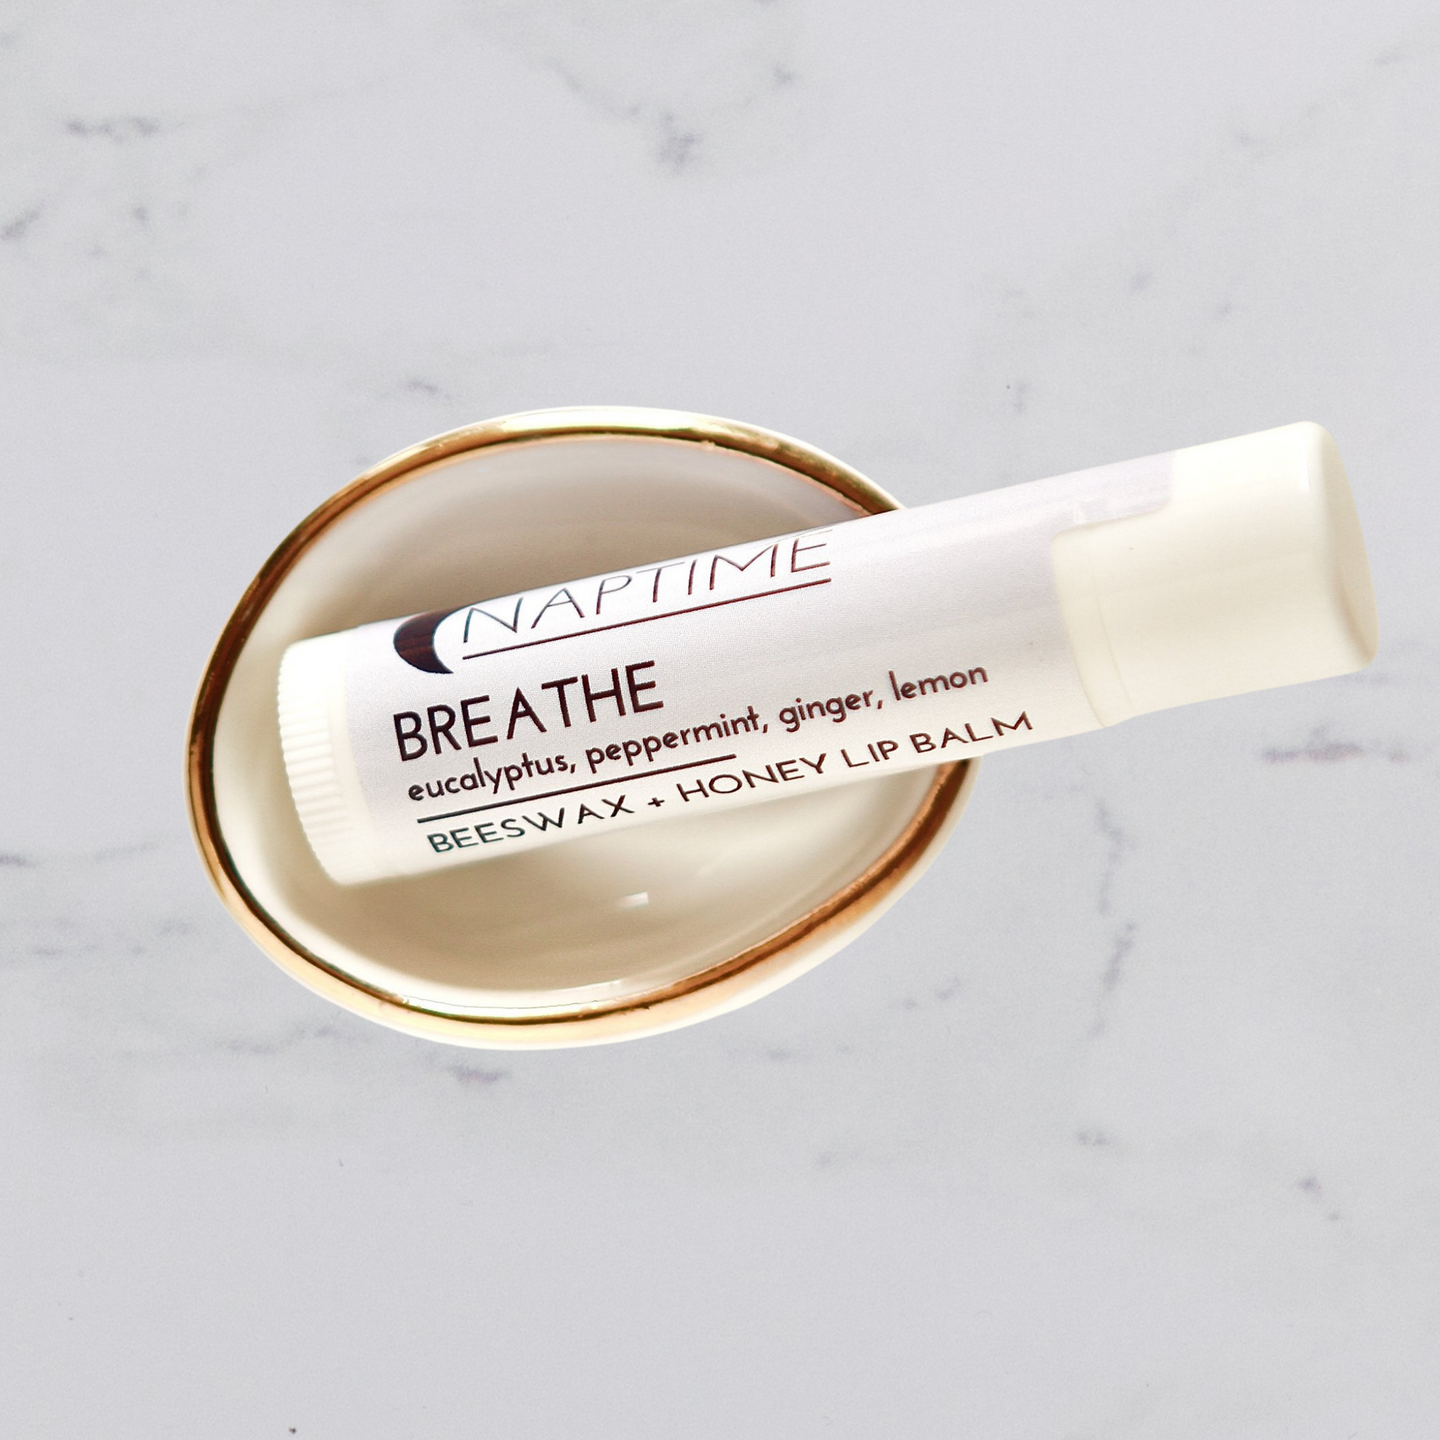 Breathe Beeswax + Honey Lip Balm - Peppermint, Eucalyptus, Lemon + Ginger